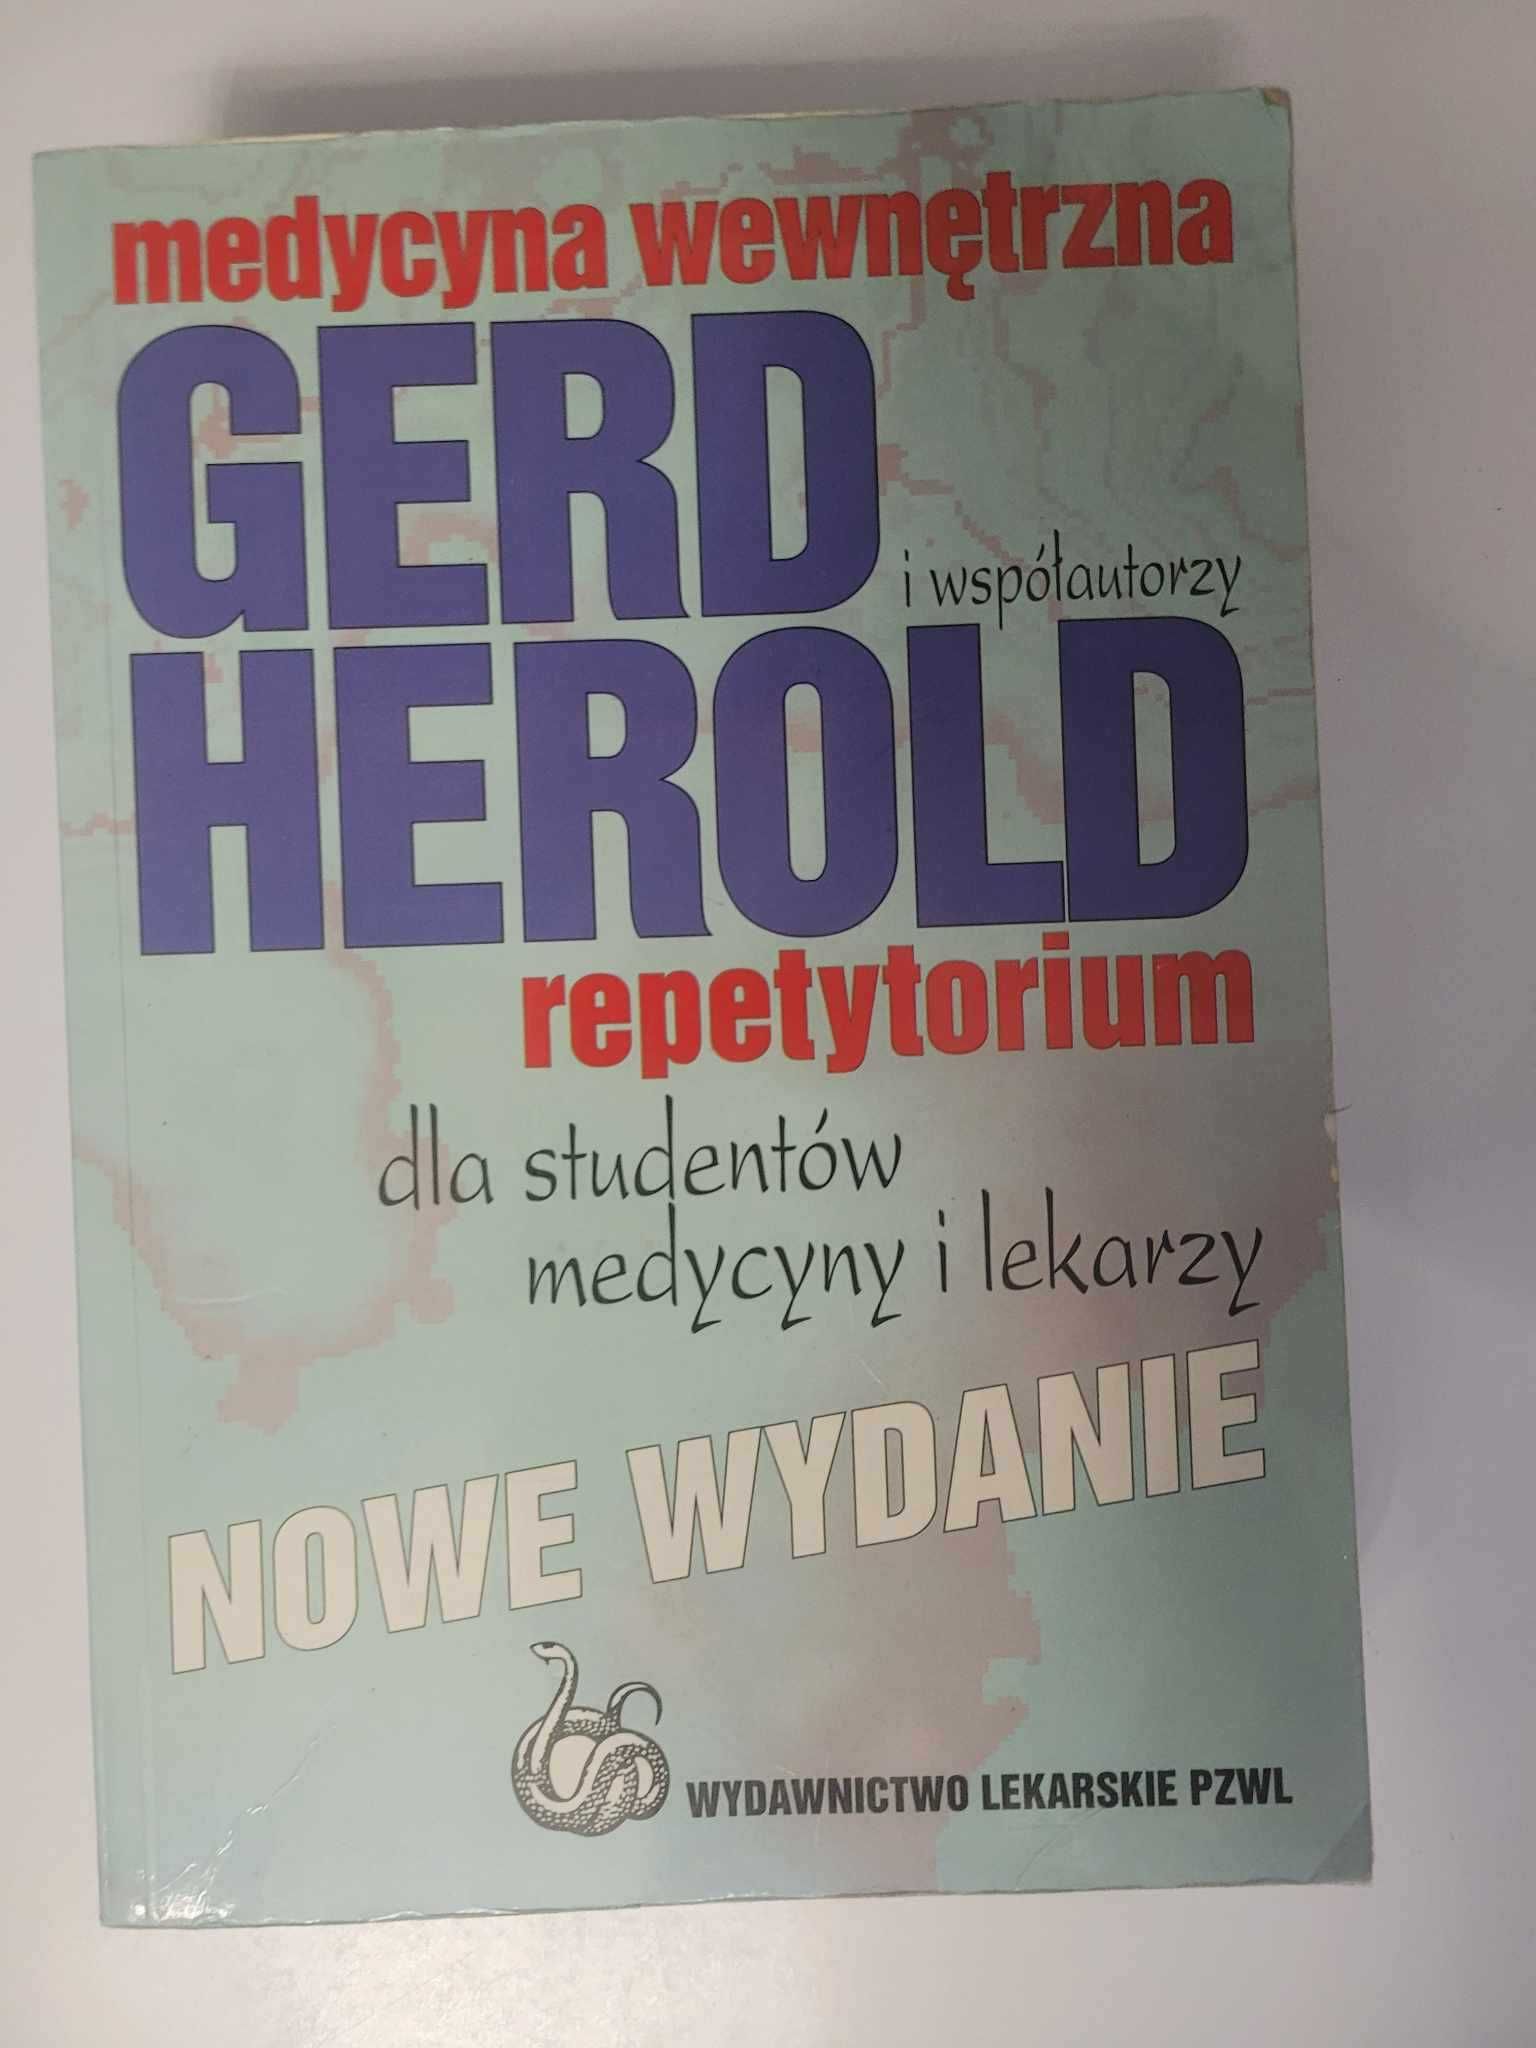 Medycyna wewnętrzna Gerd Herold repetytorium...